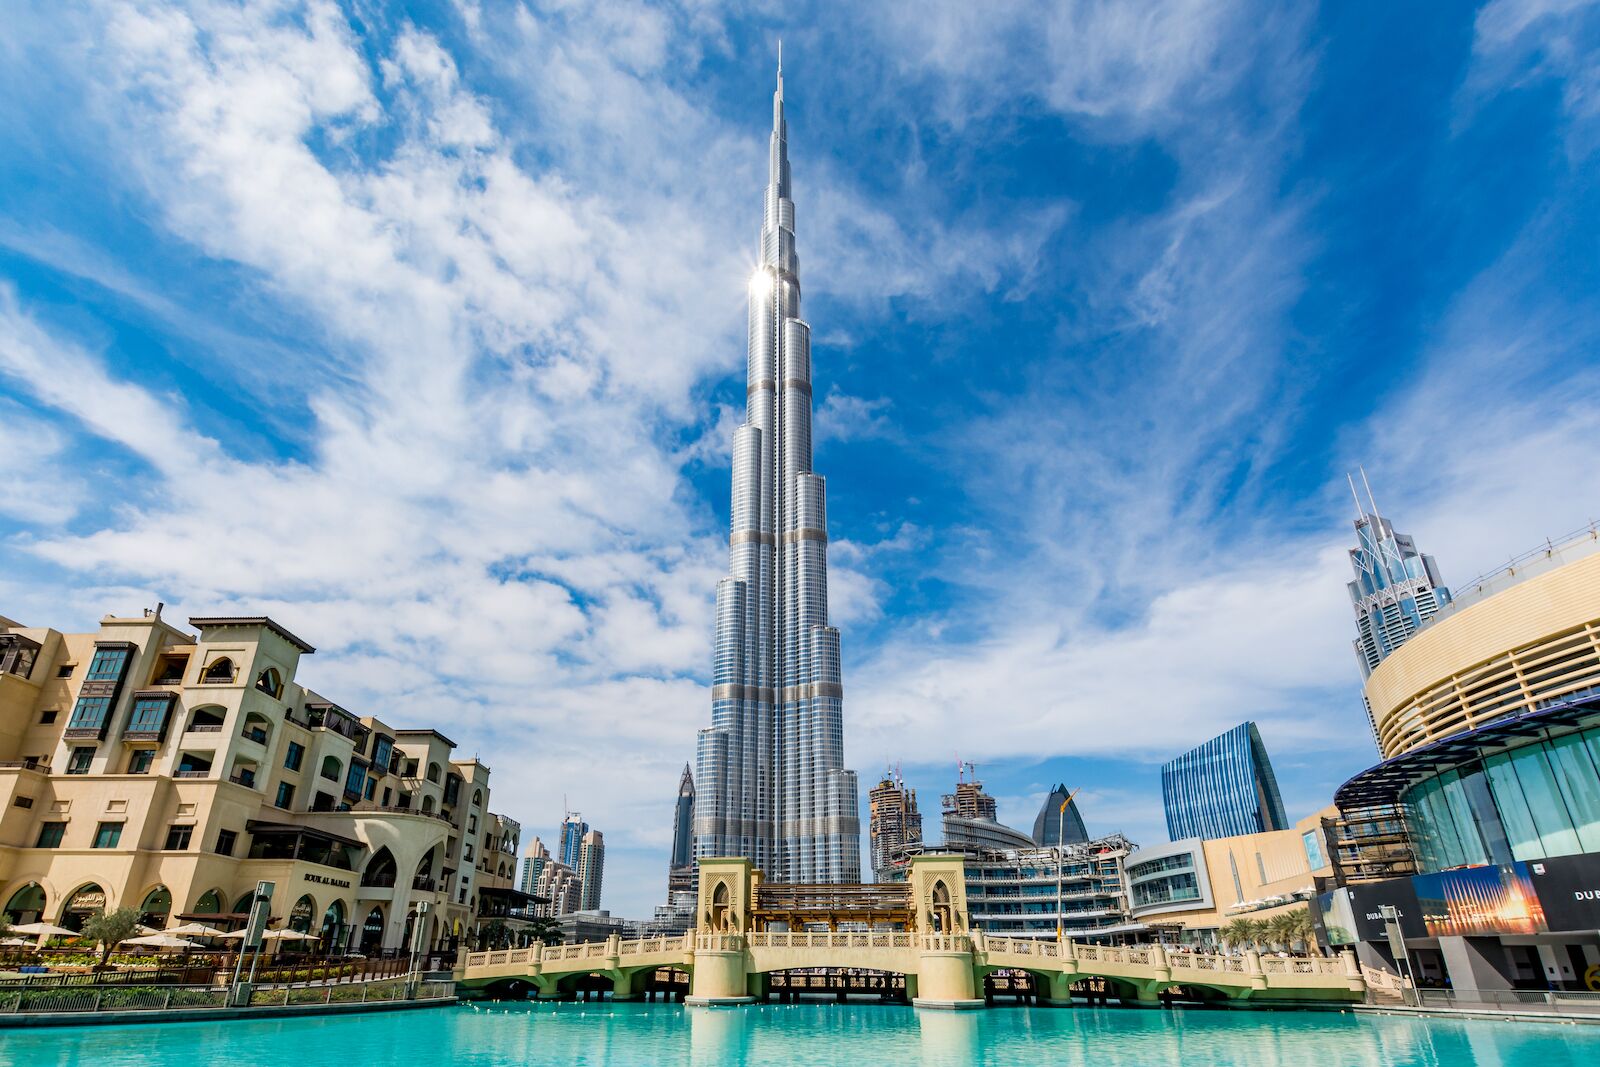 Burj Khalifa viewed from the ground